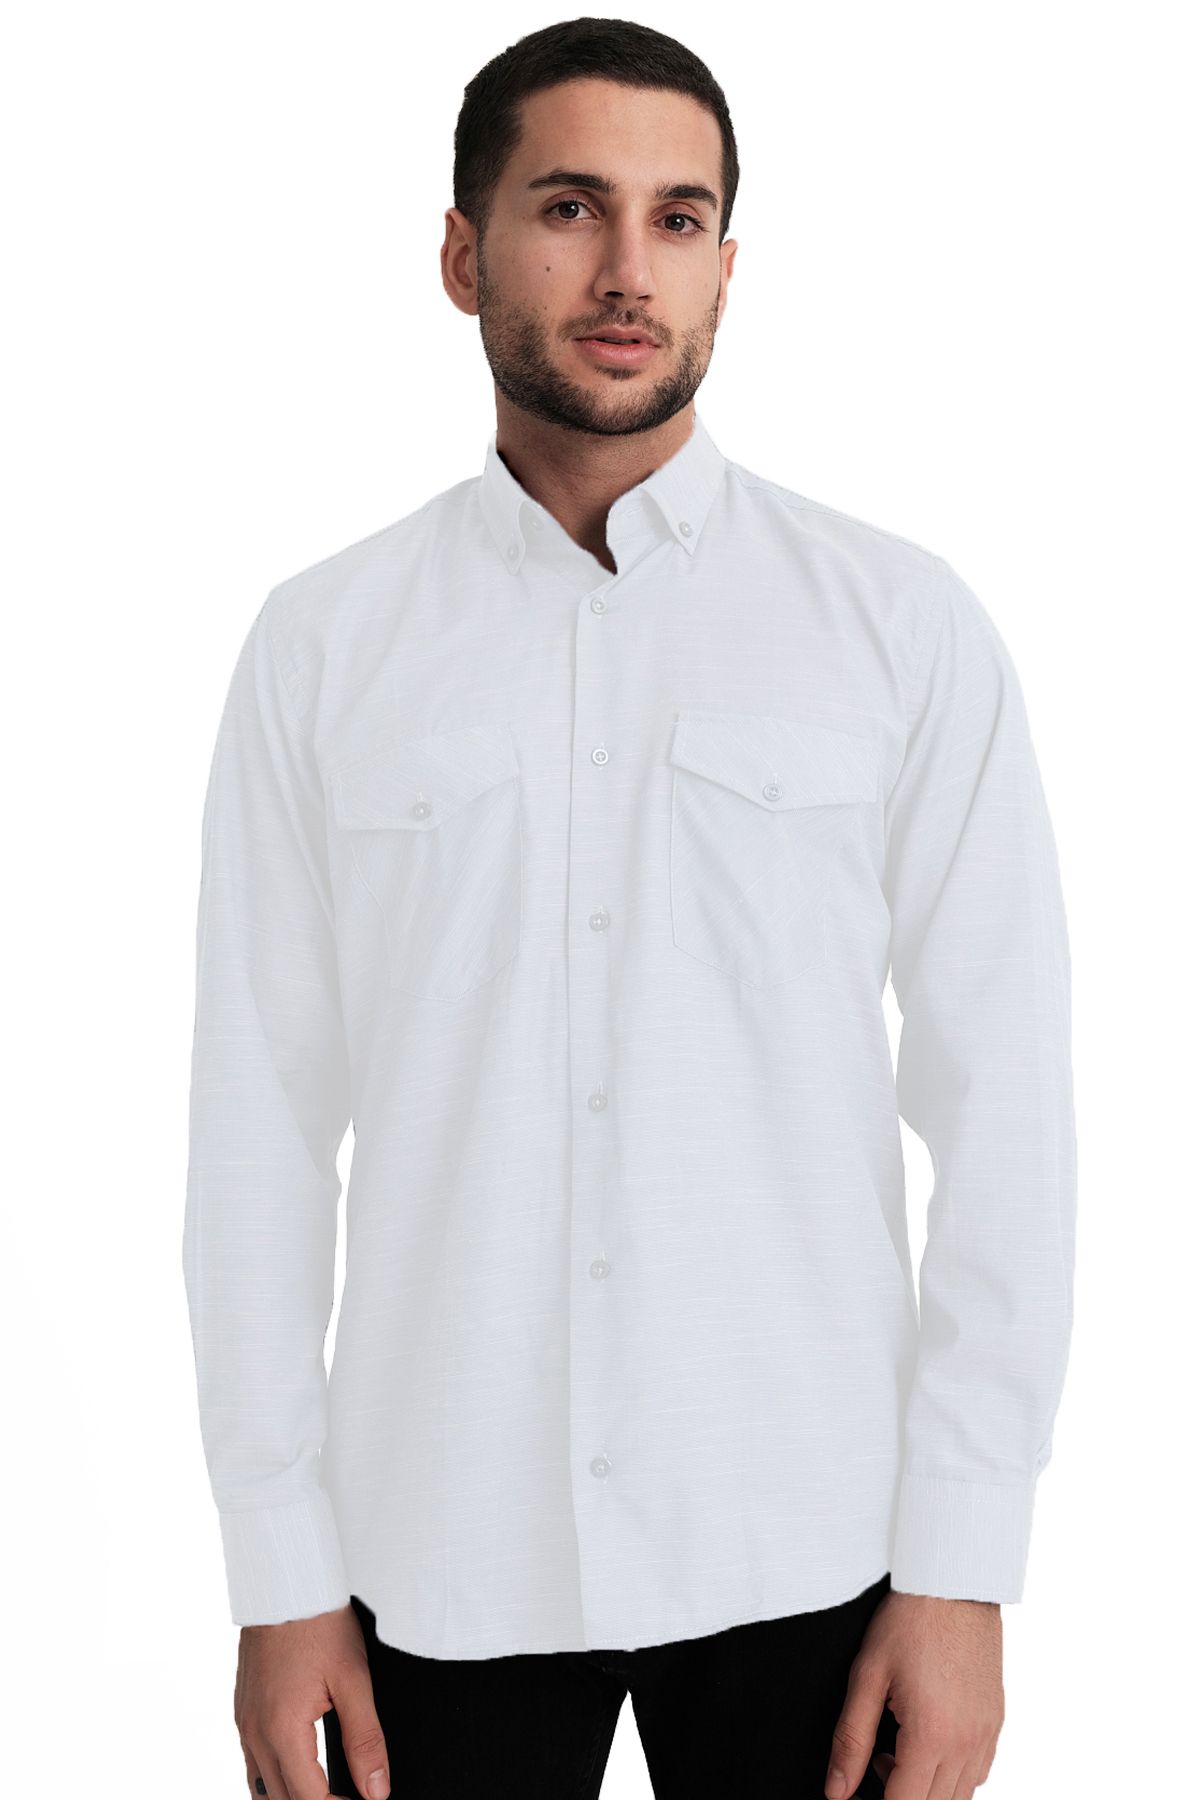 Varetta Erkek Beyaz Kapaklı Çift Cepli Düz Melanjlı Pamuklu Gömlek